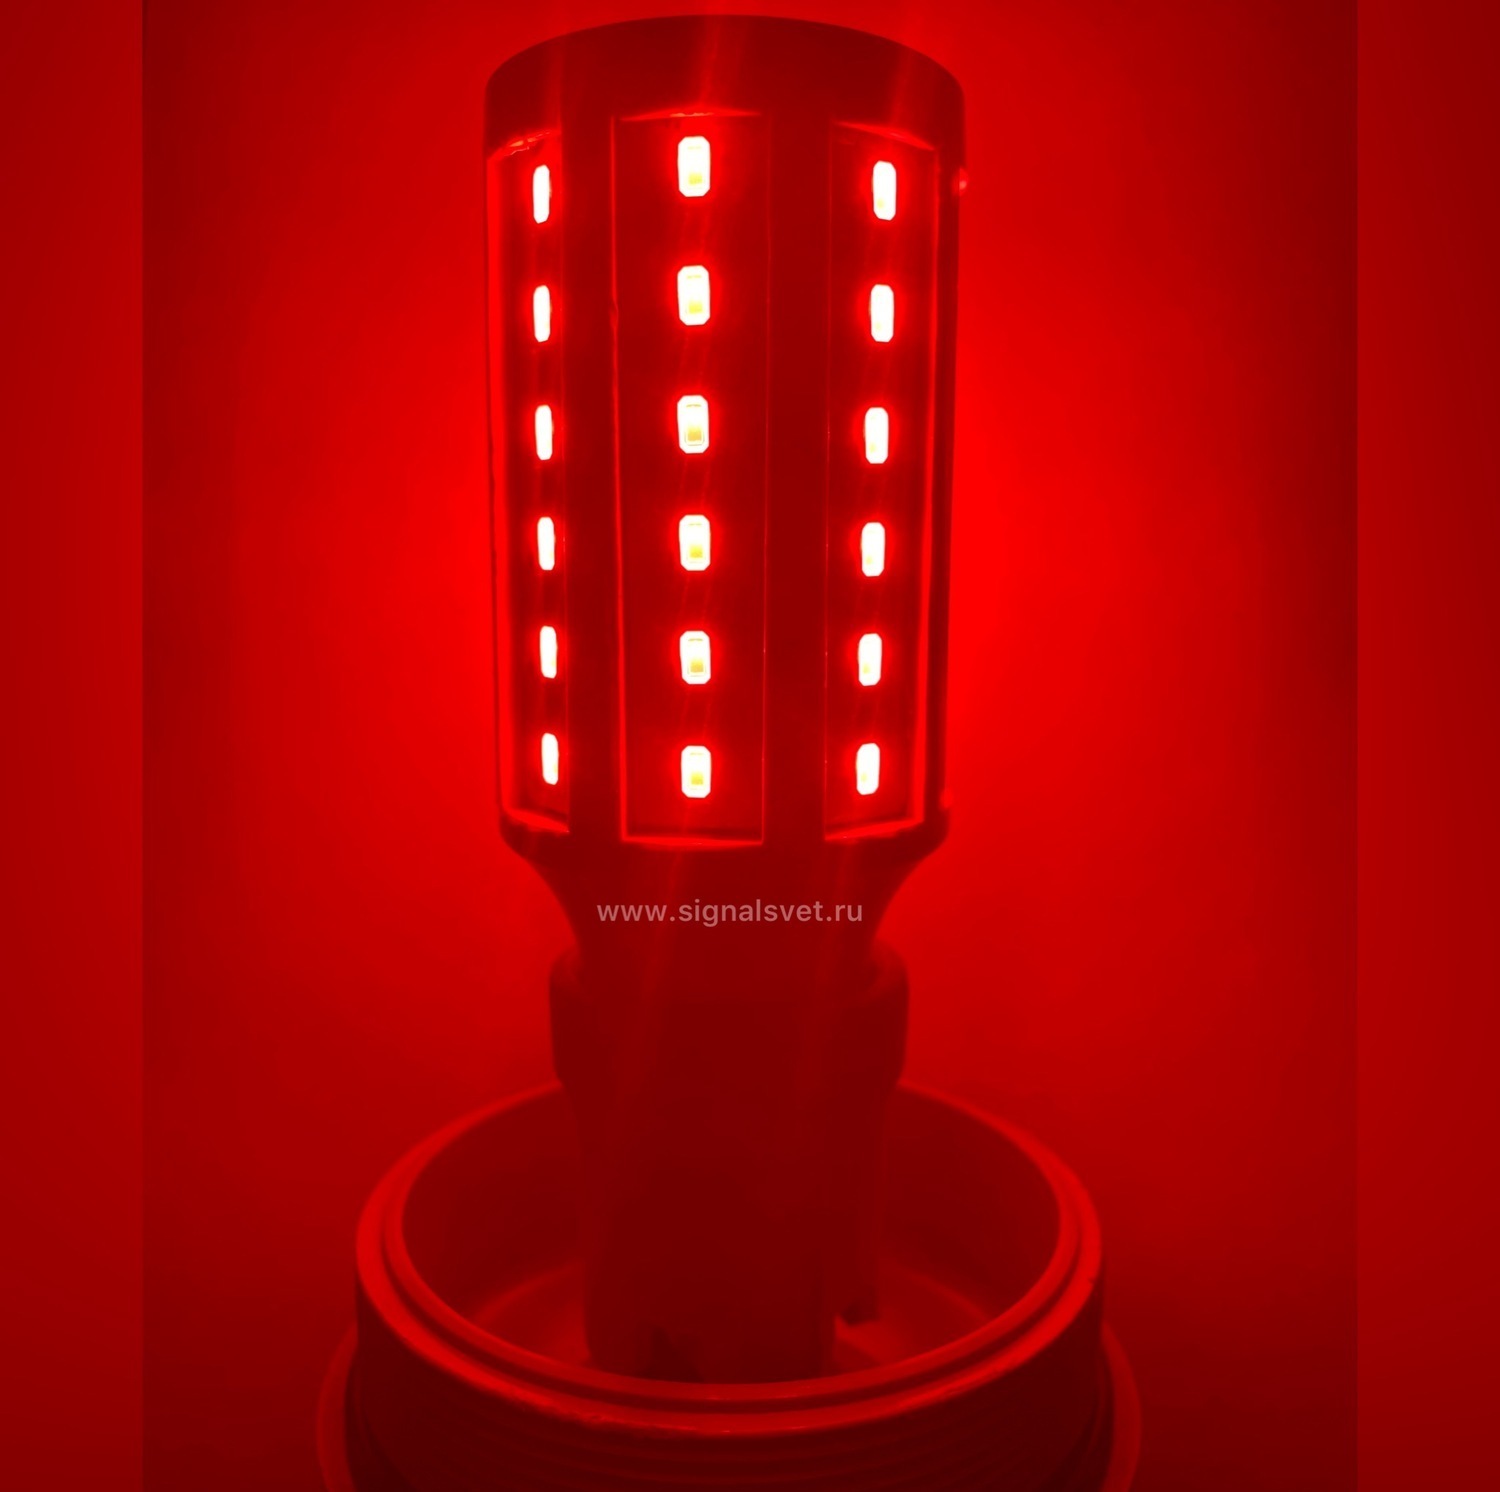 Светодиодная лампа ЛСД М 220В 35кд Красная